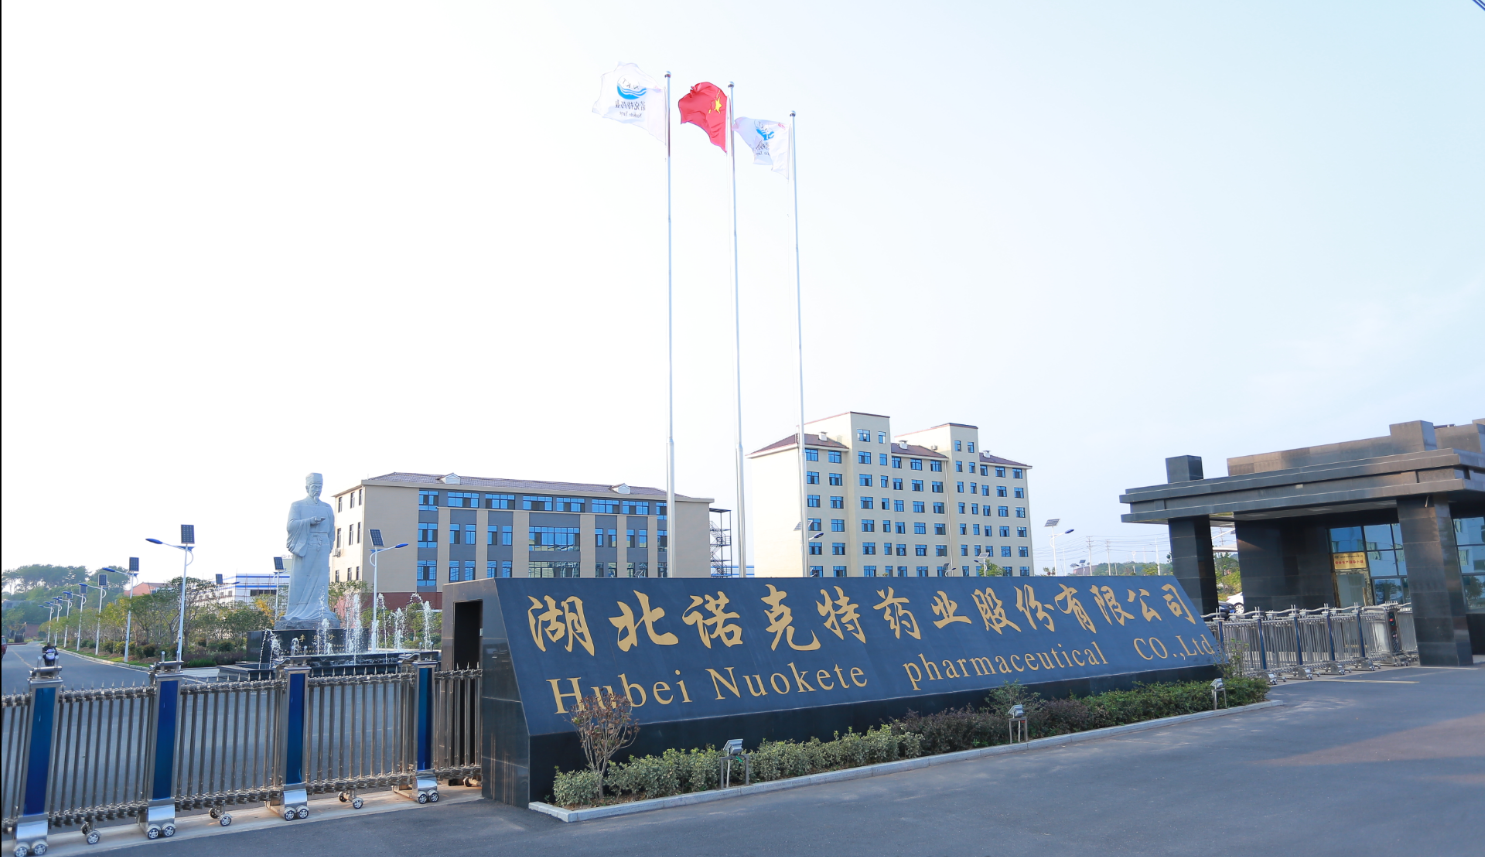 Hubei Nokete Pharmaceutical Co., Ltd.